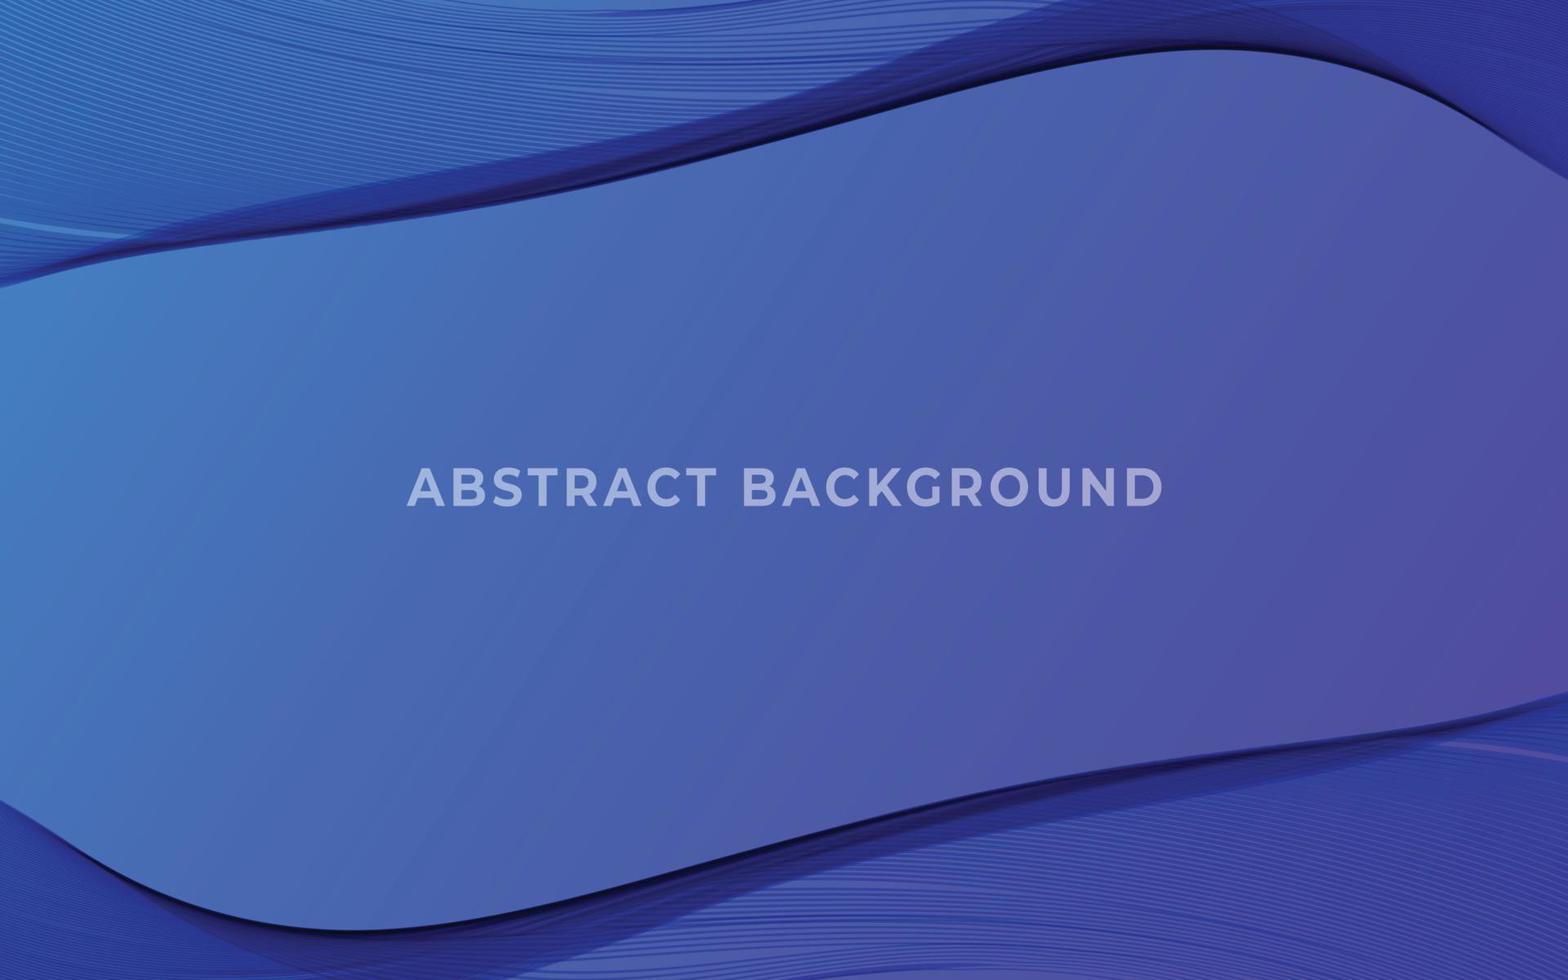 abstrakter blauer hintergrund mit wellenwasserkreisspiralenlichtbeschaffenheit vektor